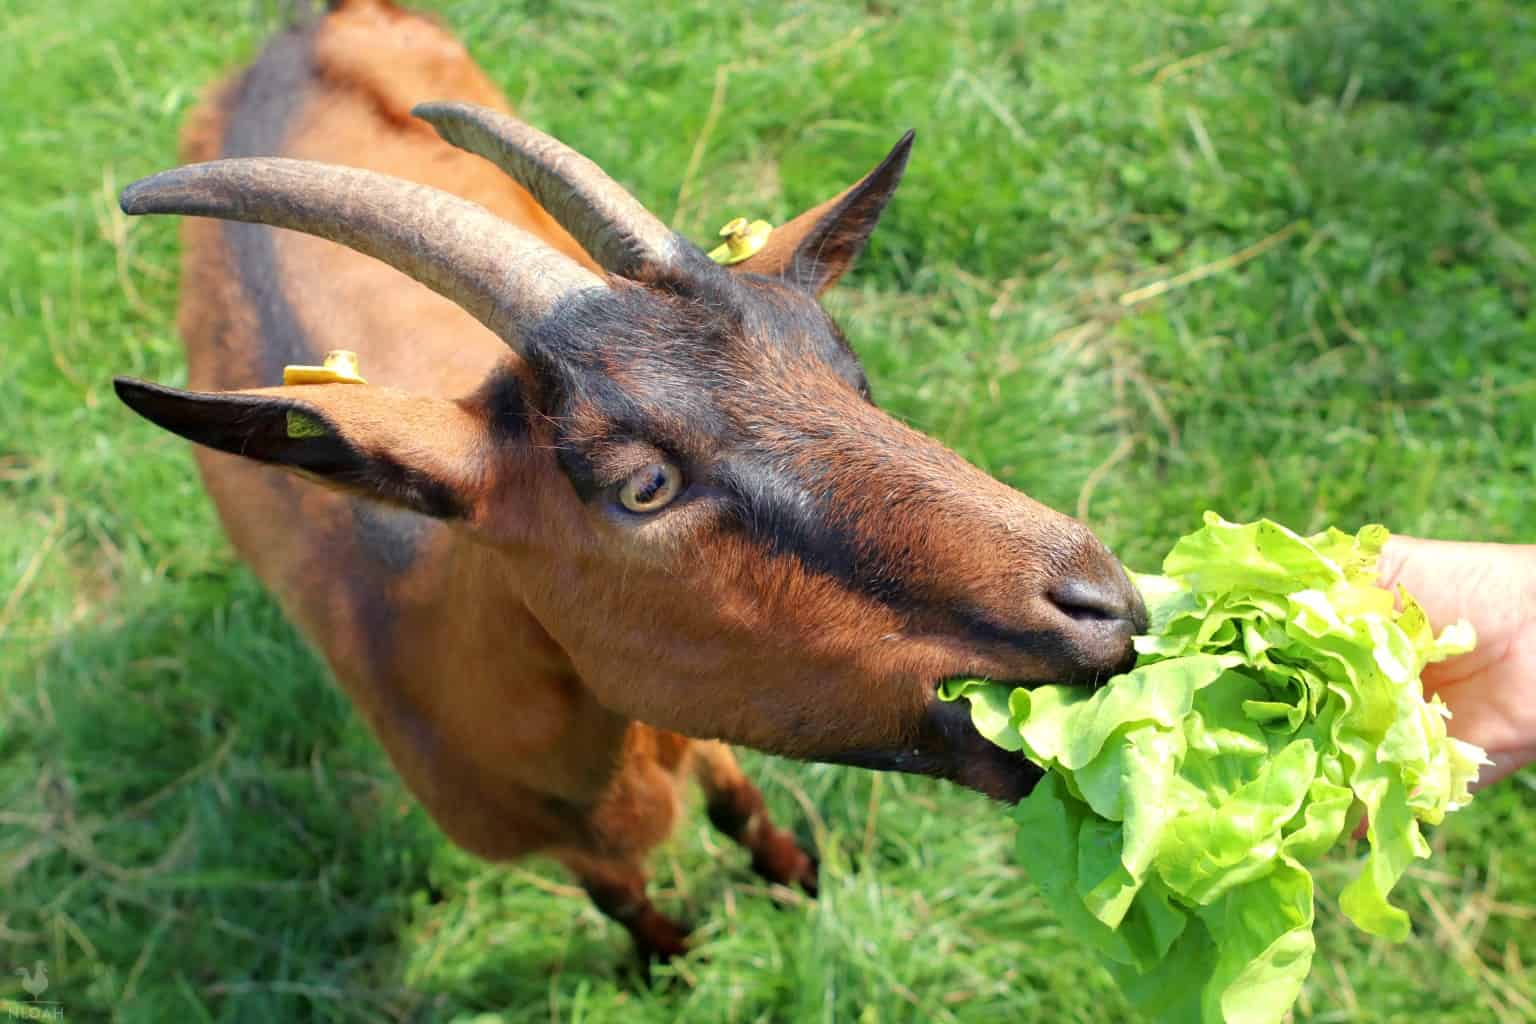 goat nibbling on some lettuce